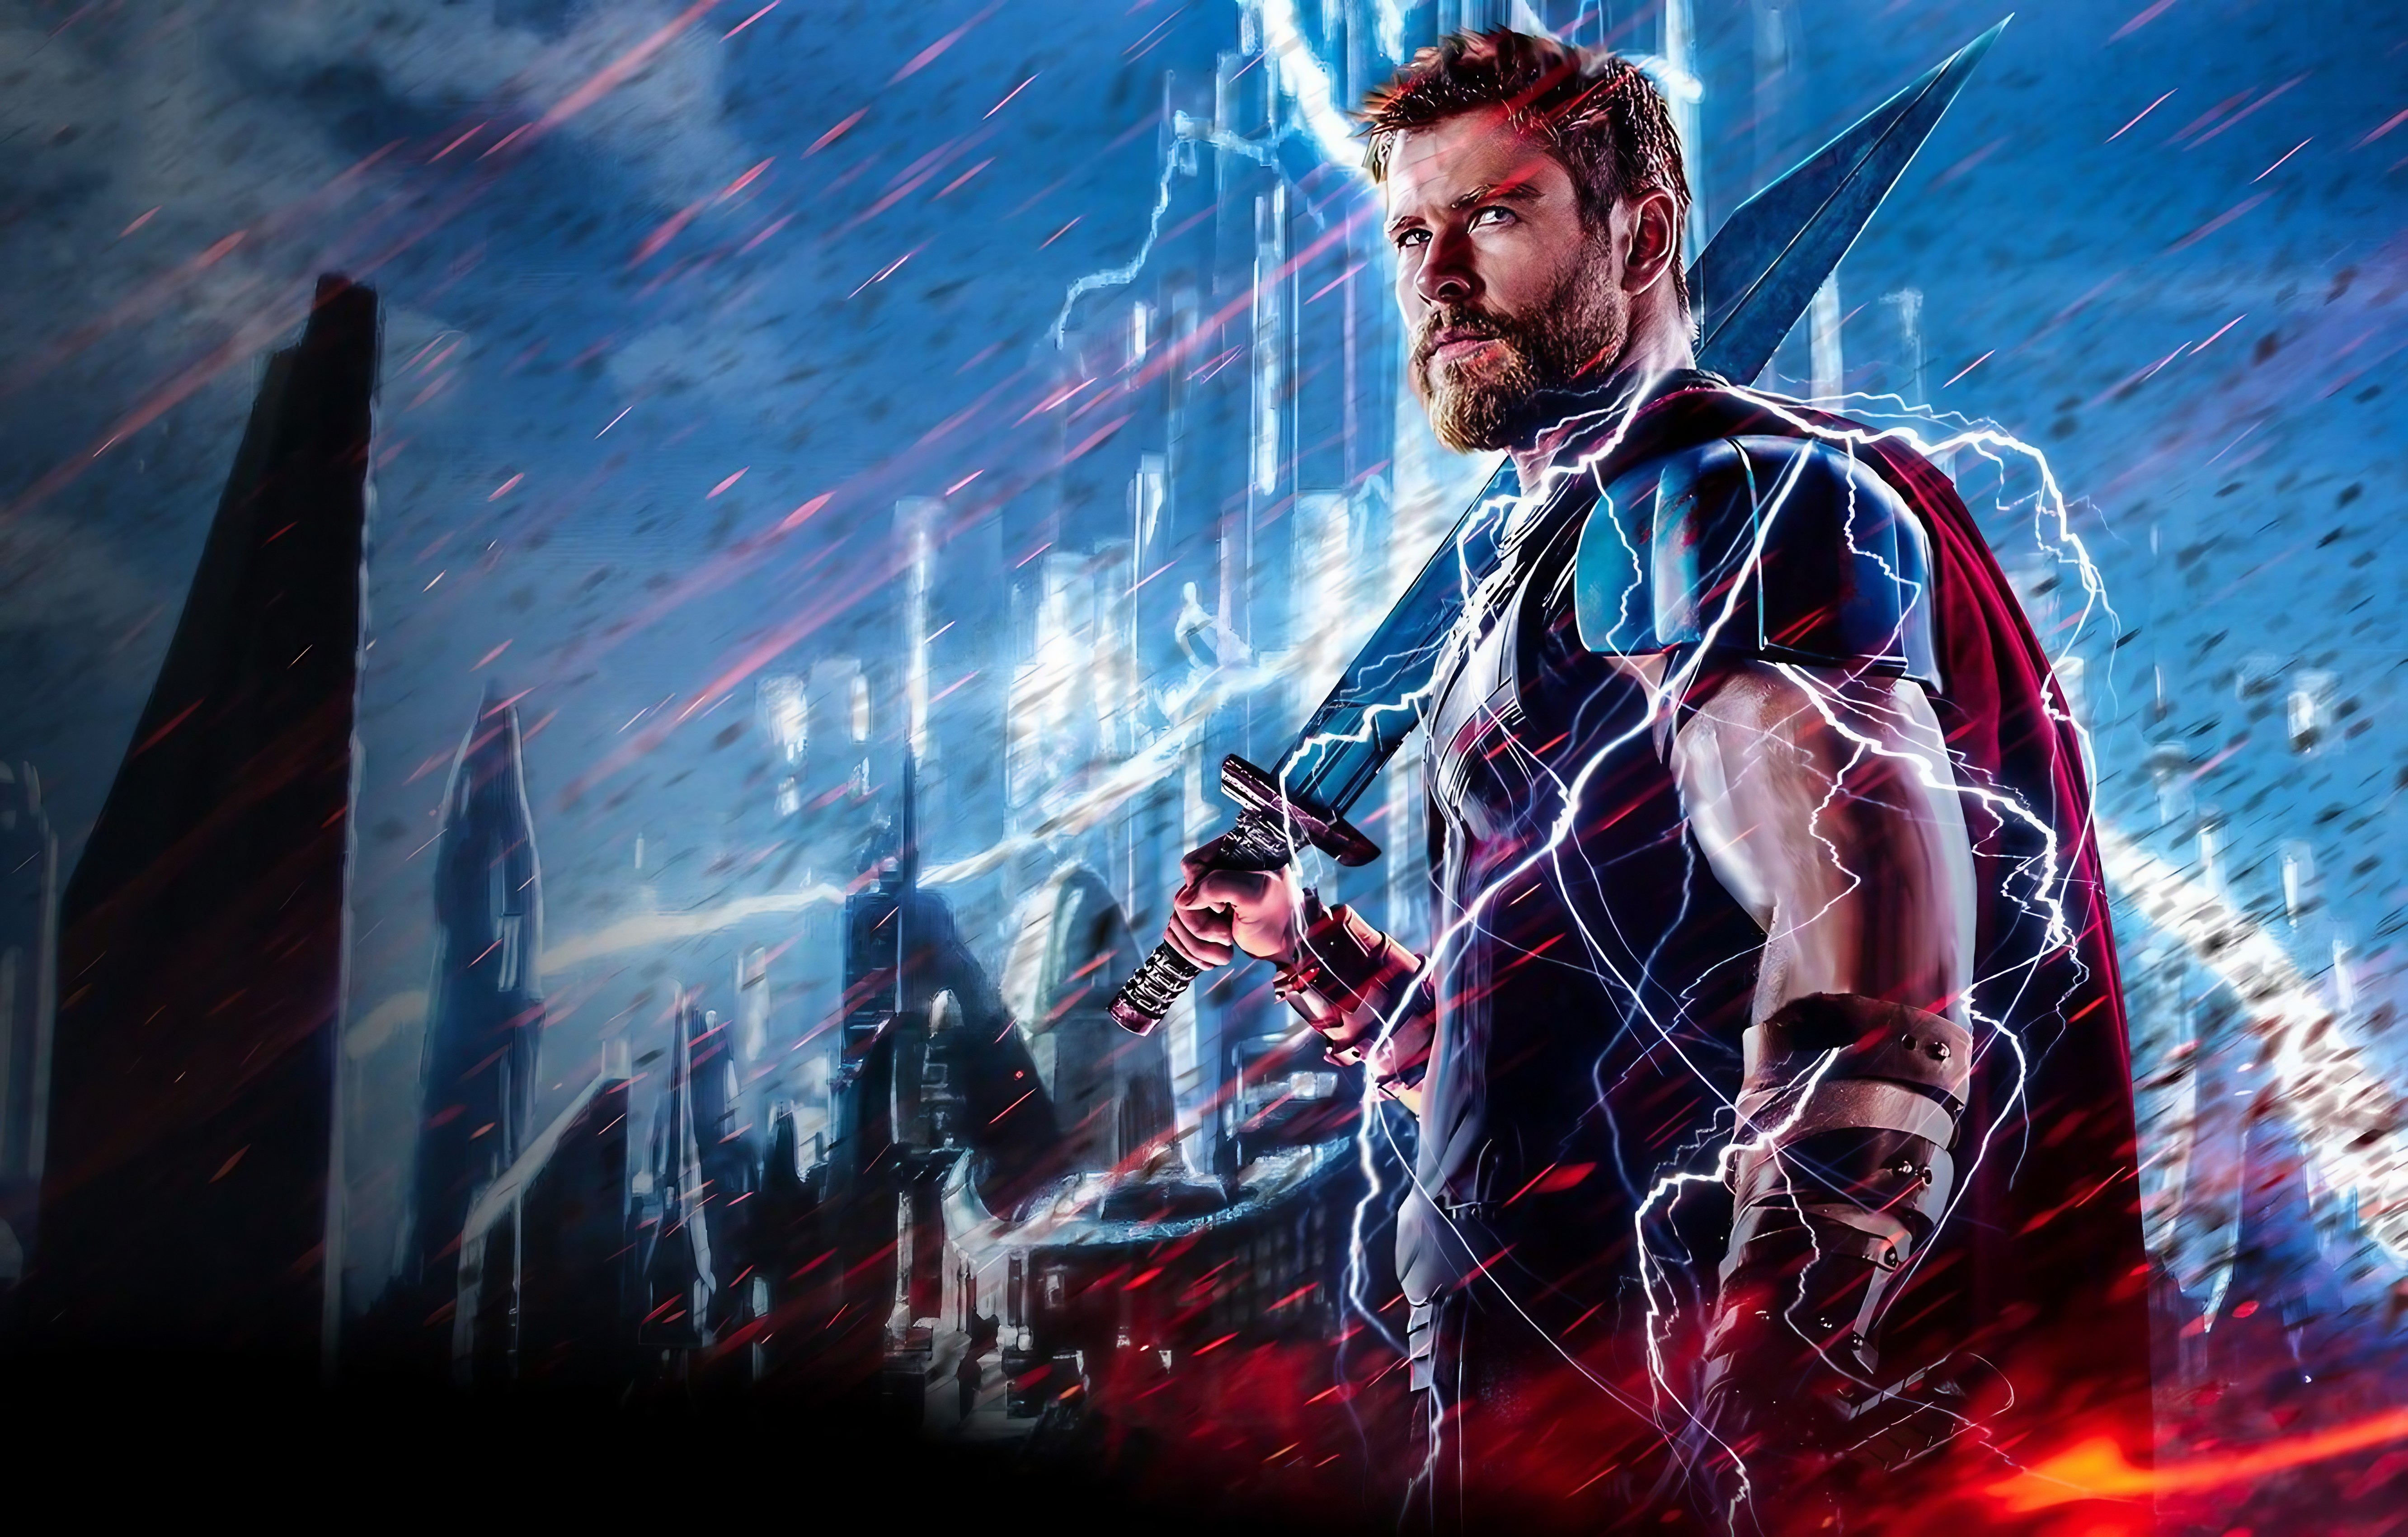 Avengers Thor - Thor Ragnarok